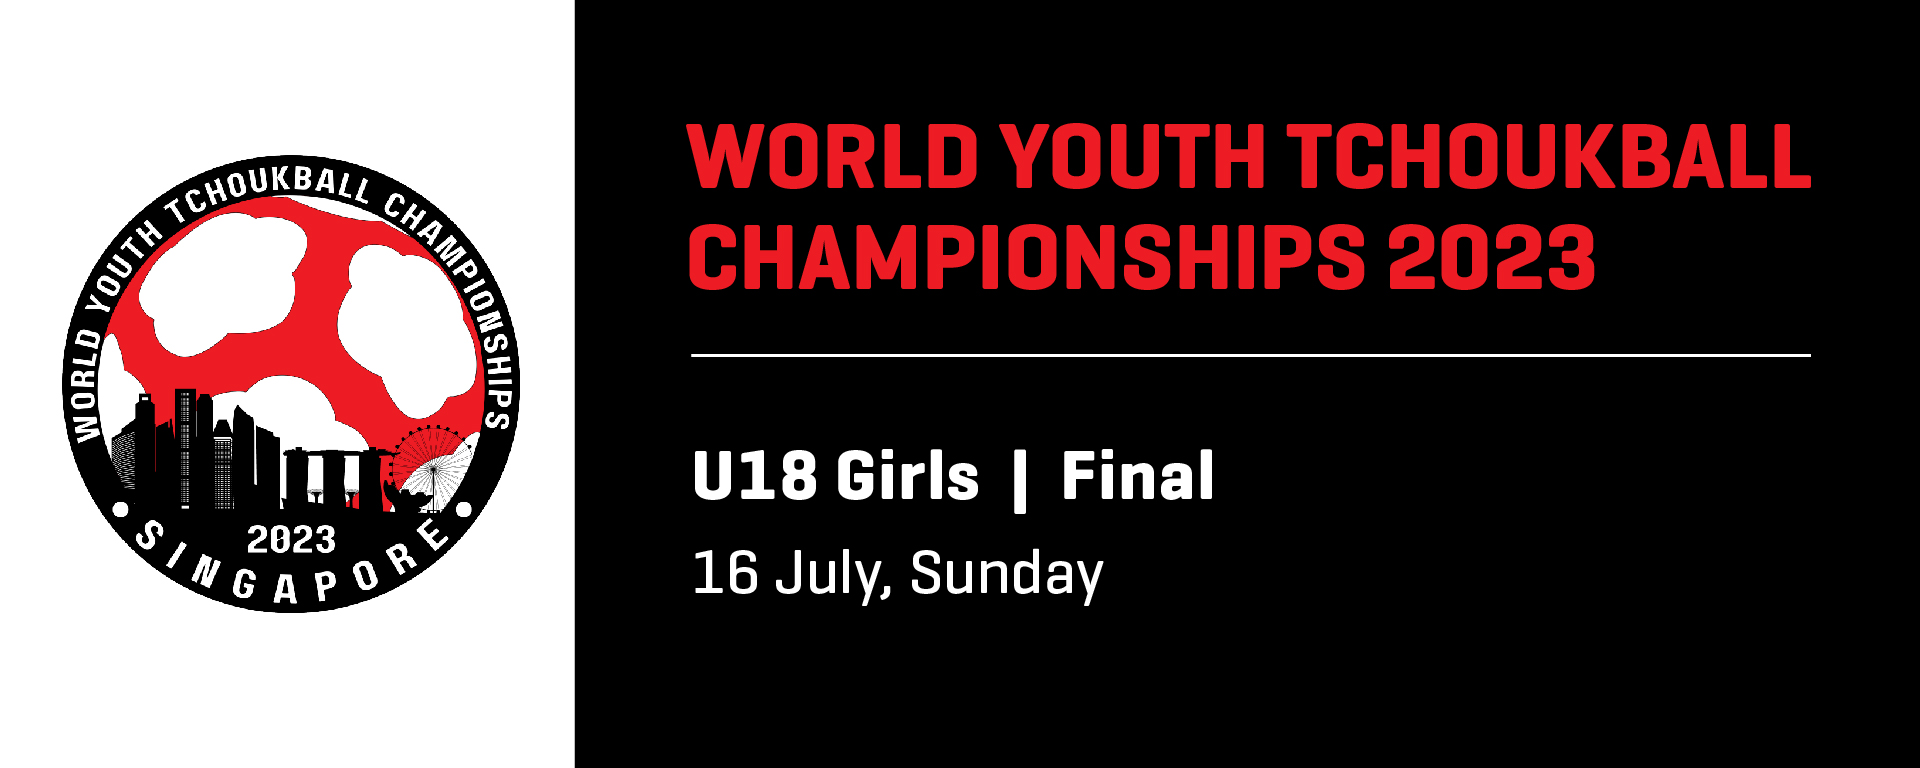 World Youth Tchoukball Championships 2023 | U18 Girls Final | Singapore vs Macau